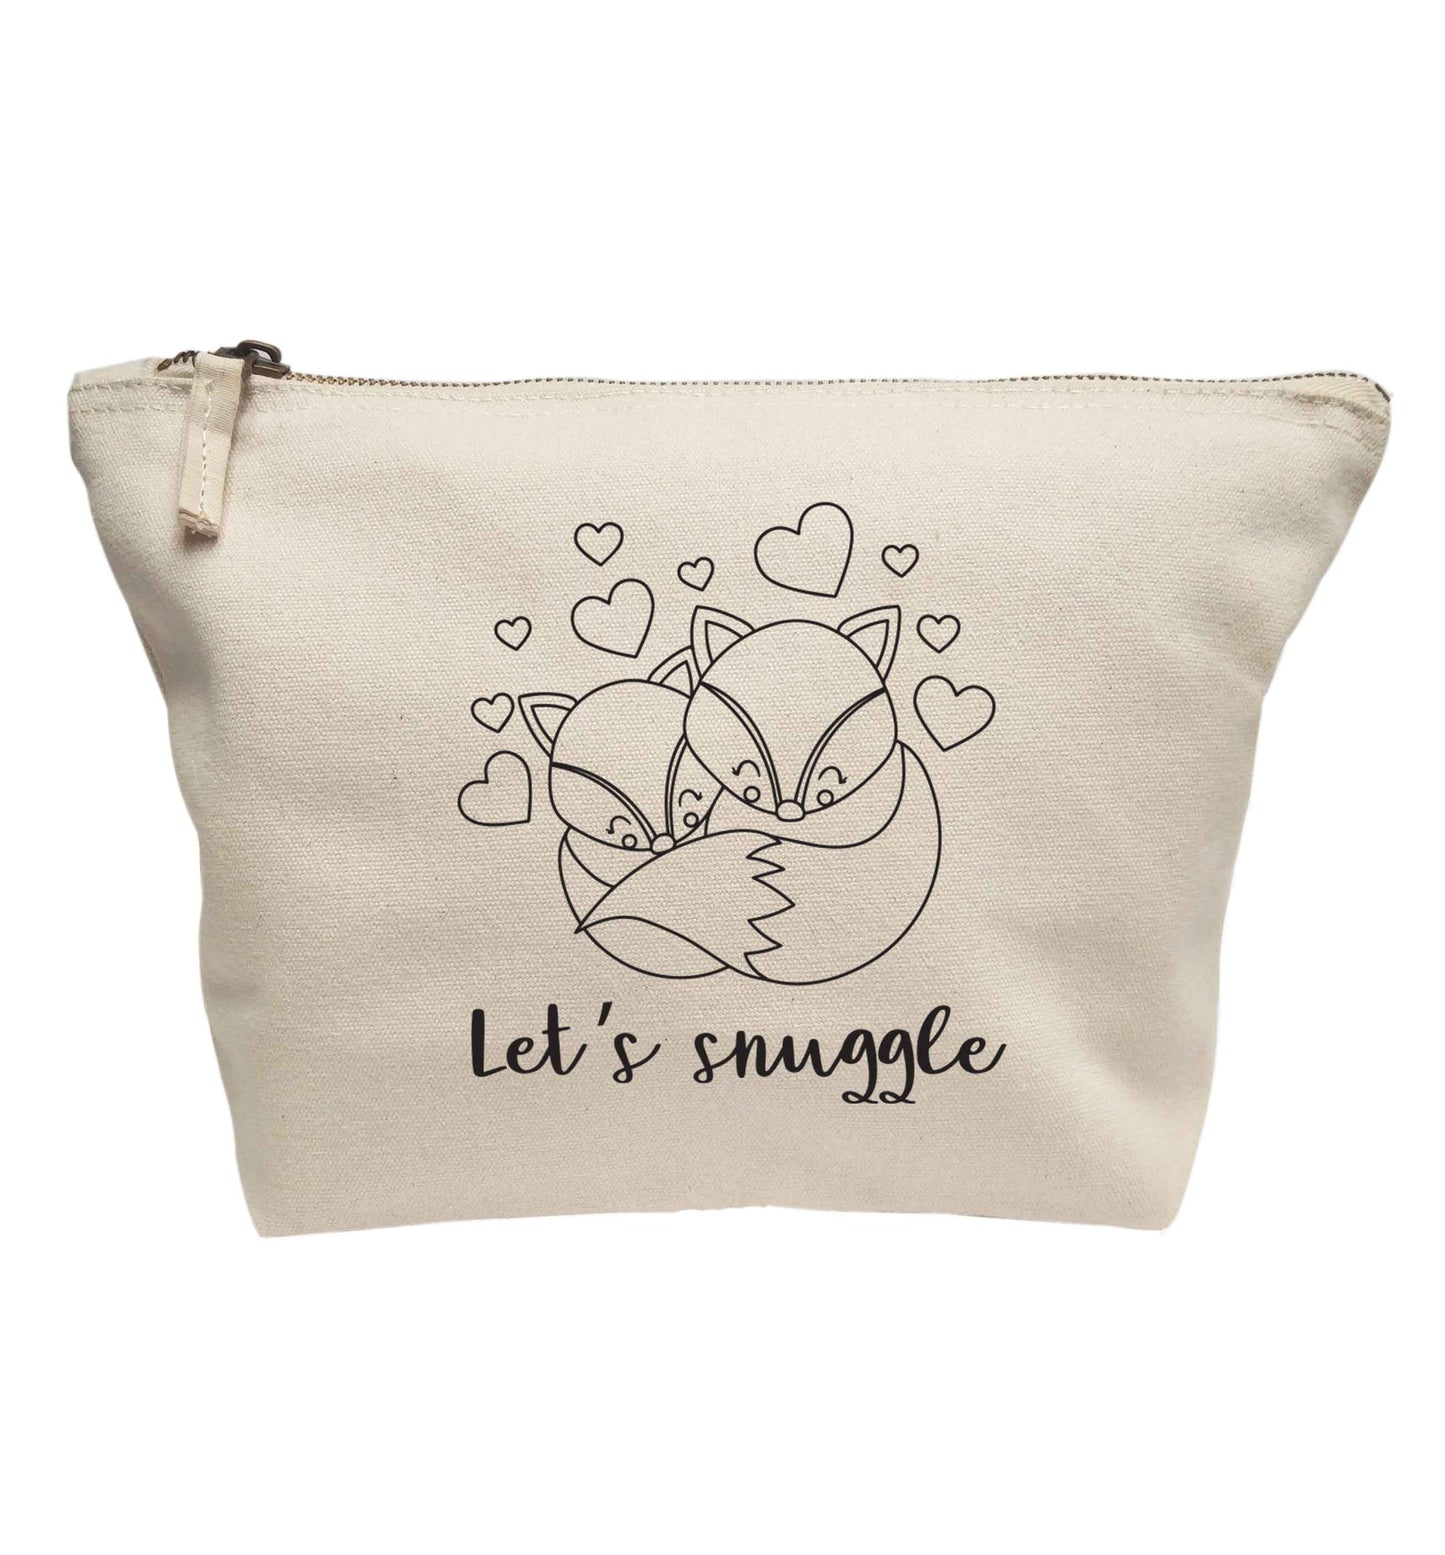 Let's snuggle | Makeup / wash bag